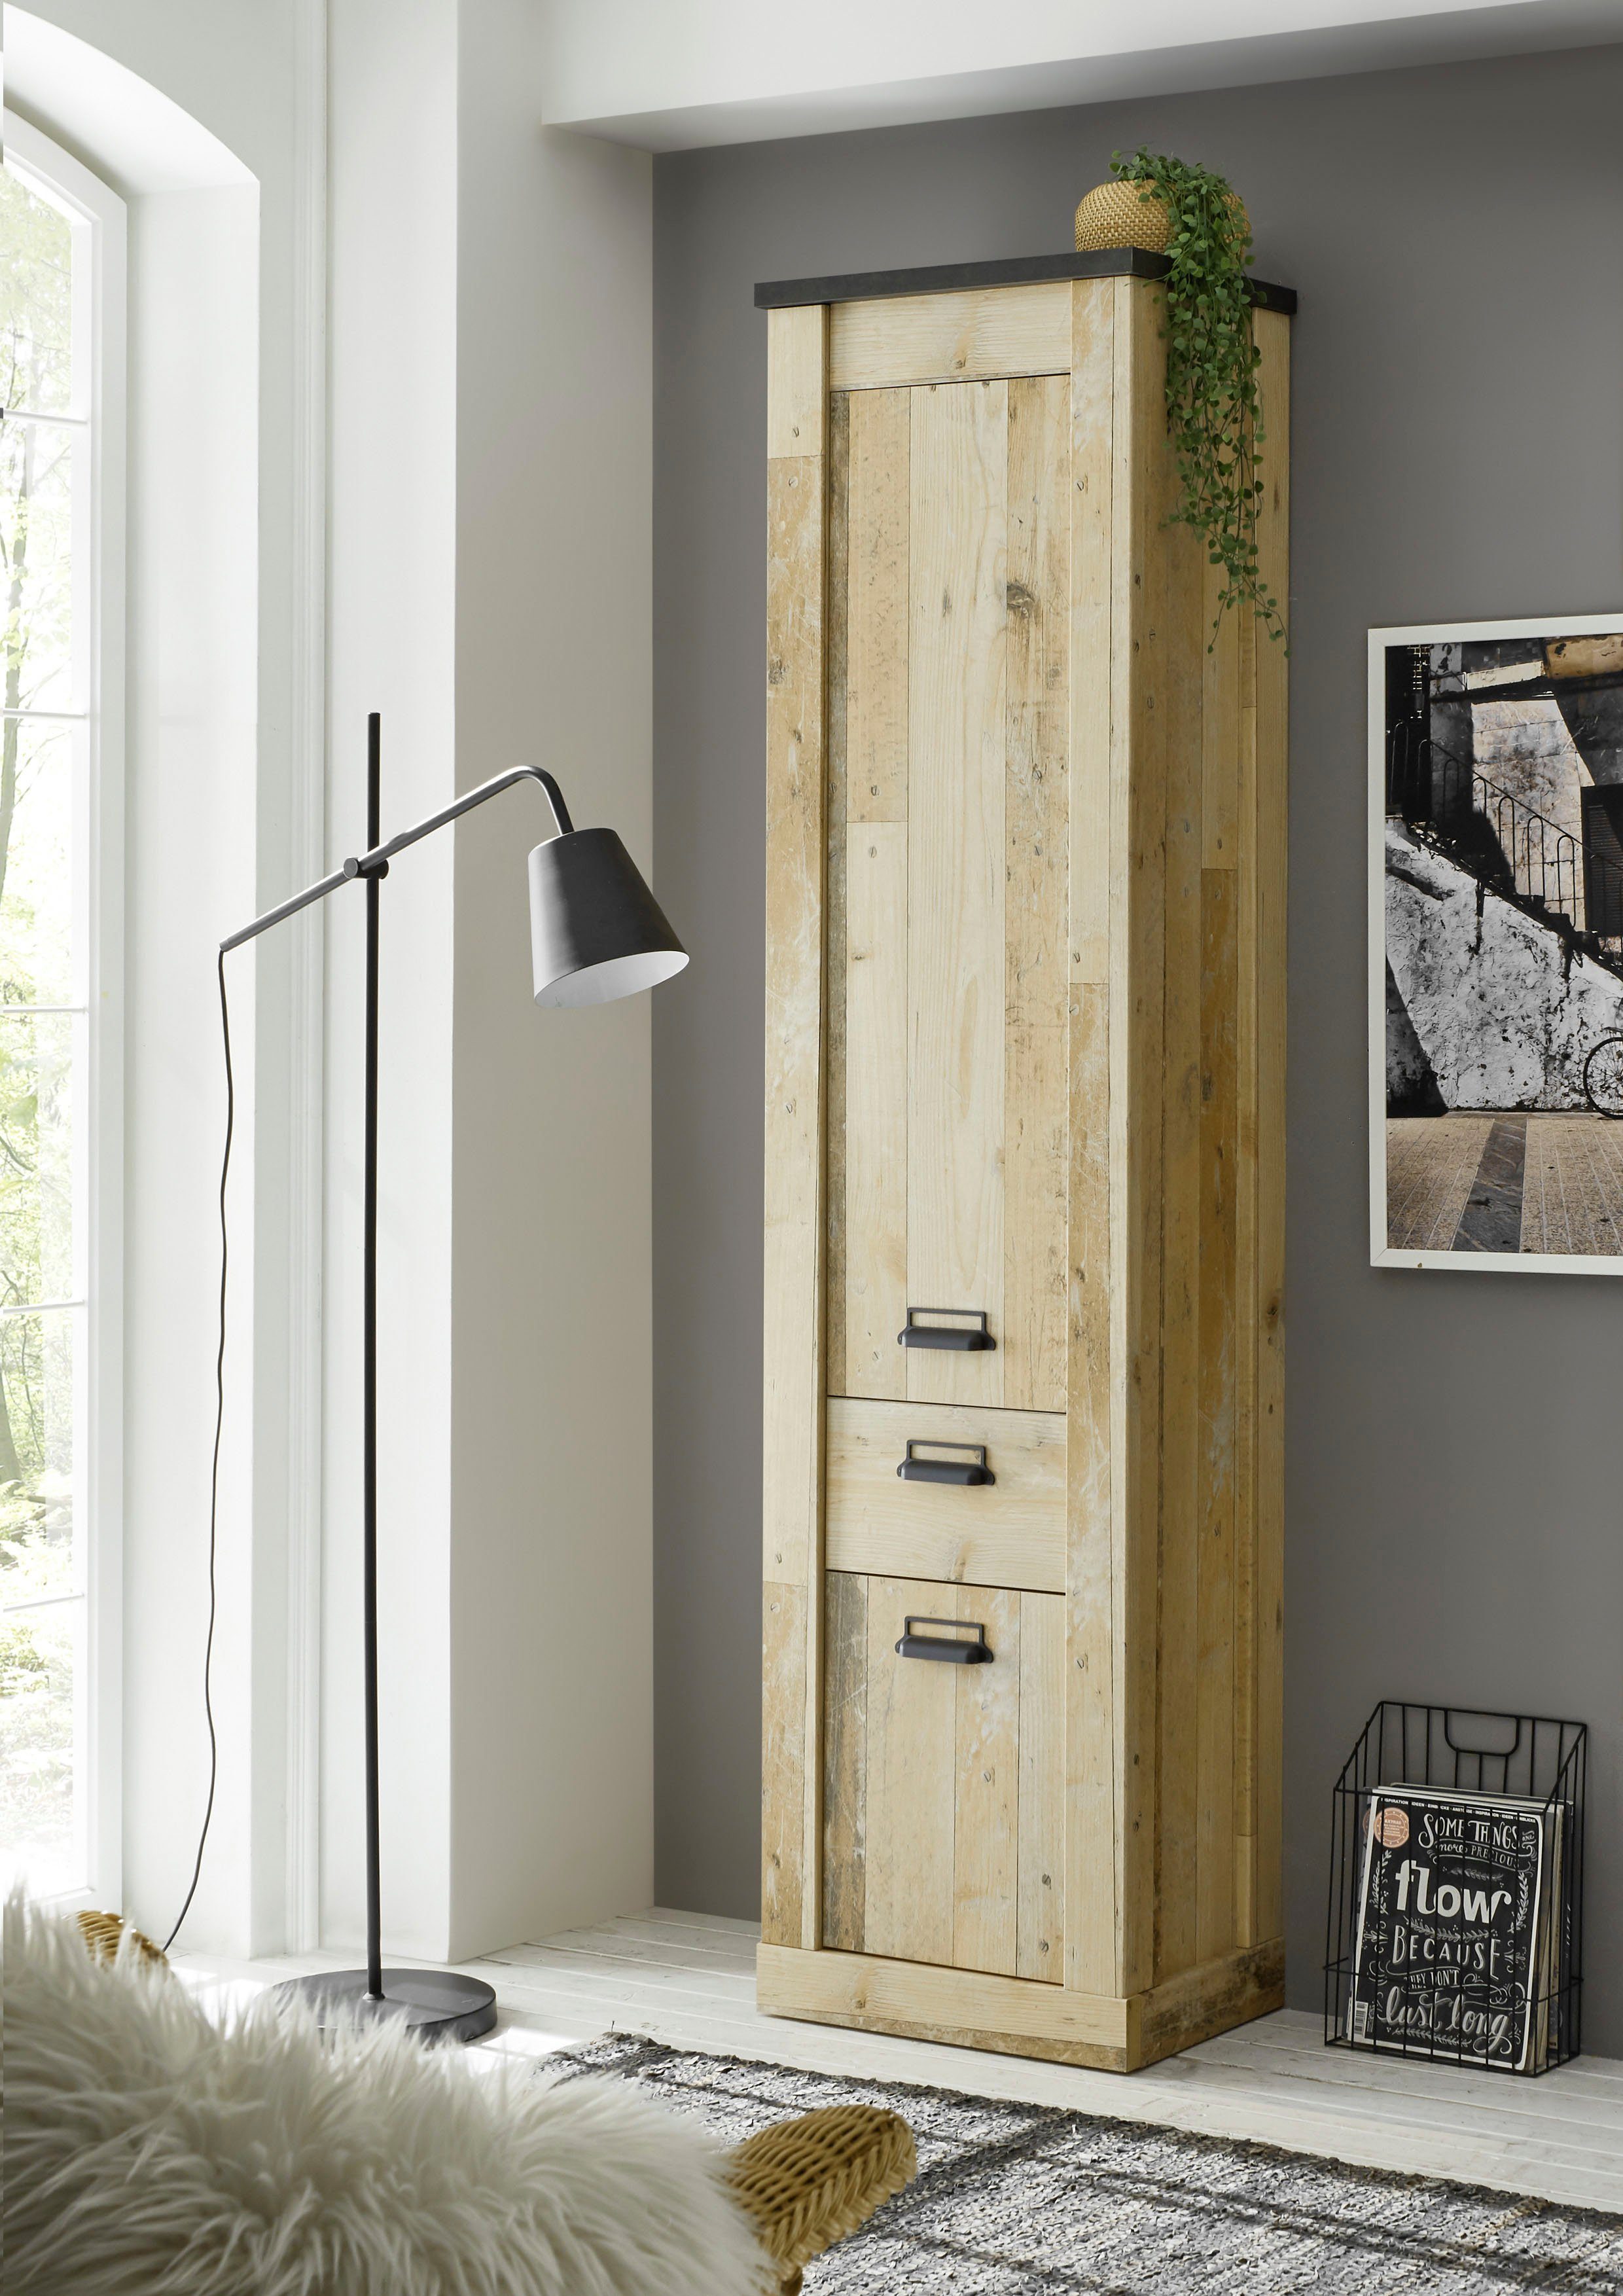 Home affaire Stauraumschrank SHERWOOD in modernem Holz Dekor, mit Apothekergriffen aus Metall, Höhe 201 cm